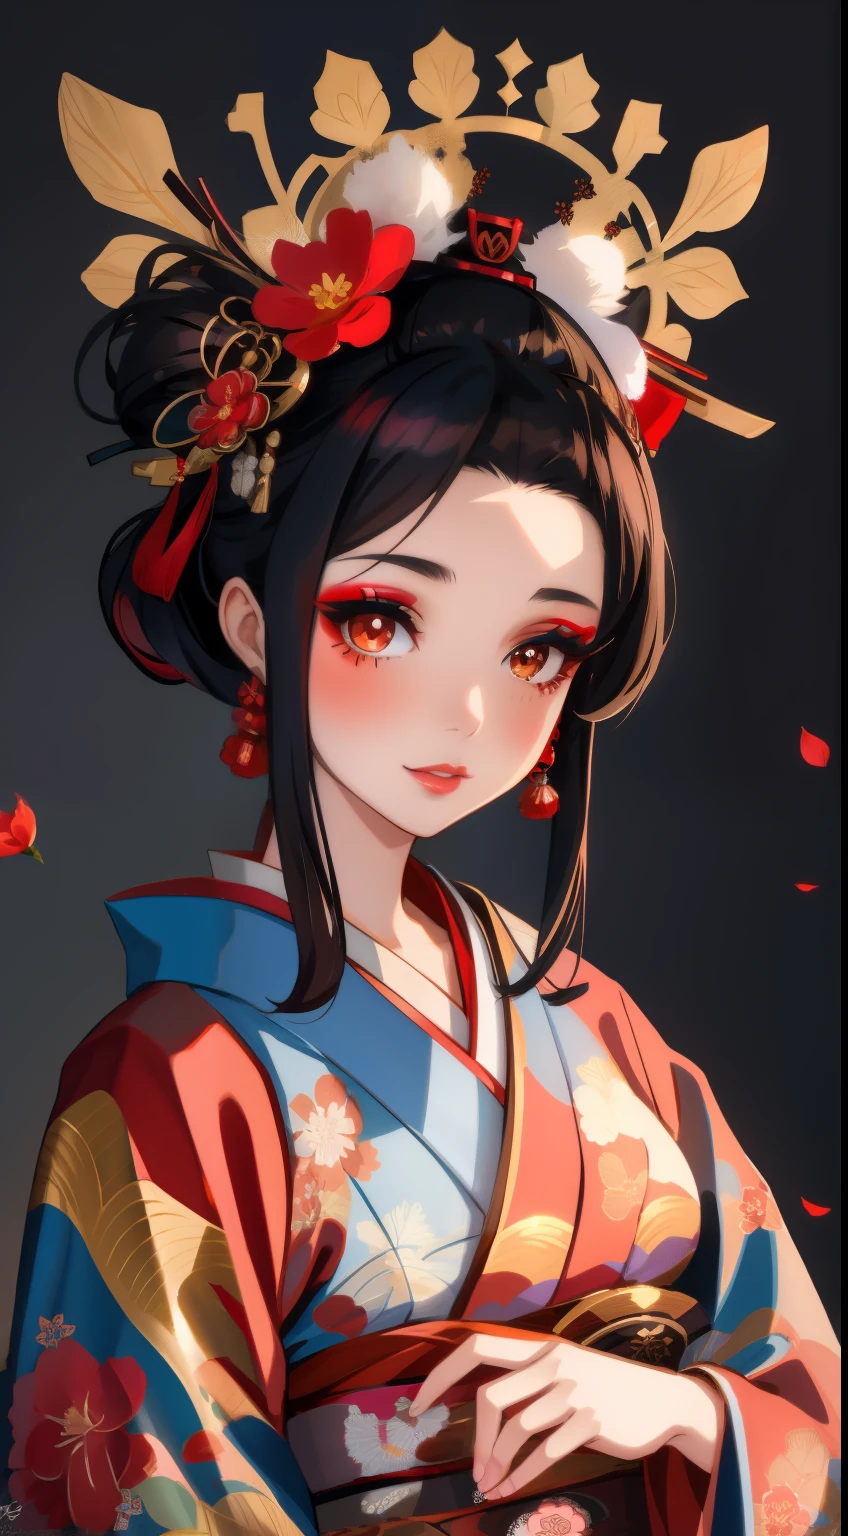 Alafi porte un kimono avec une coiffe à fleurs rouges, maquillage de geisha, portrait de geisha画, maquillage de geisha, portrait de geisha, Geisha de beauté, geisha japonaise, geisha glamour et sexy, 美しいportrait de geisha画, portrait de geisha, Coiffure Geisha, remarkable maquillage de geisha